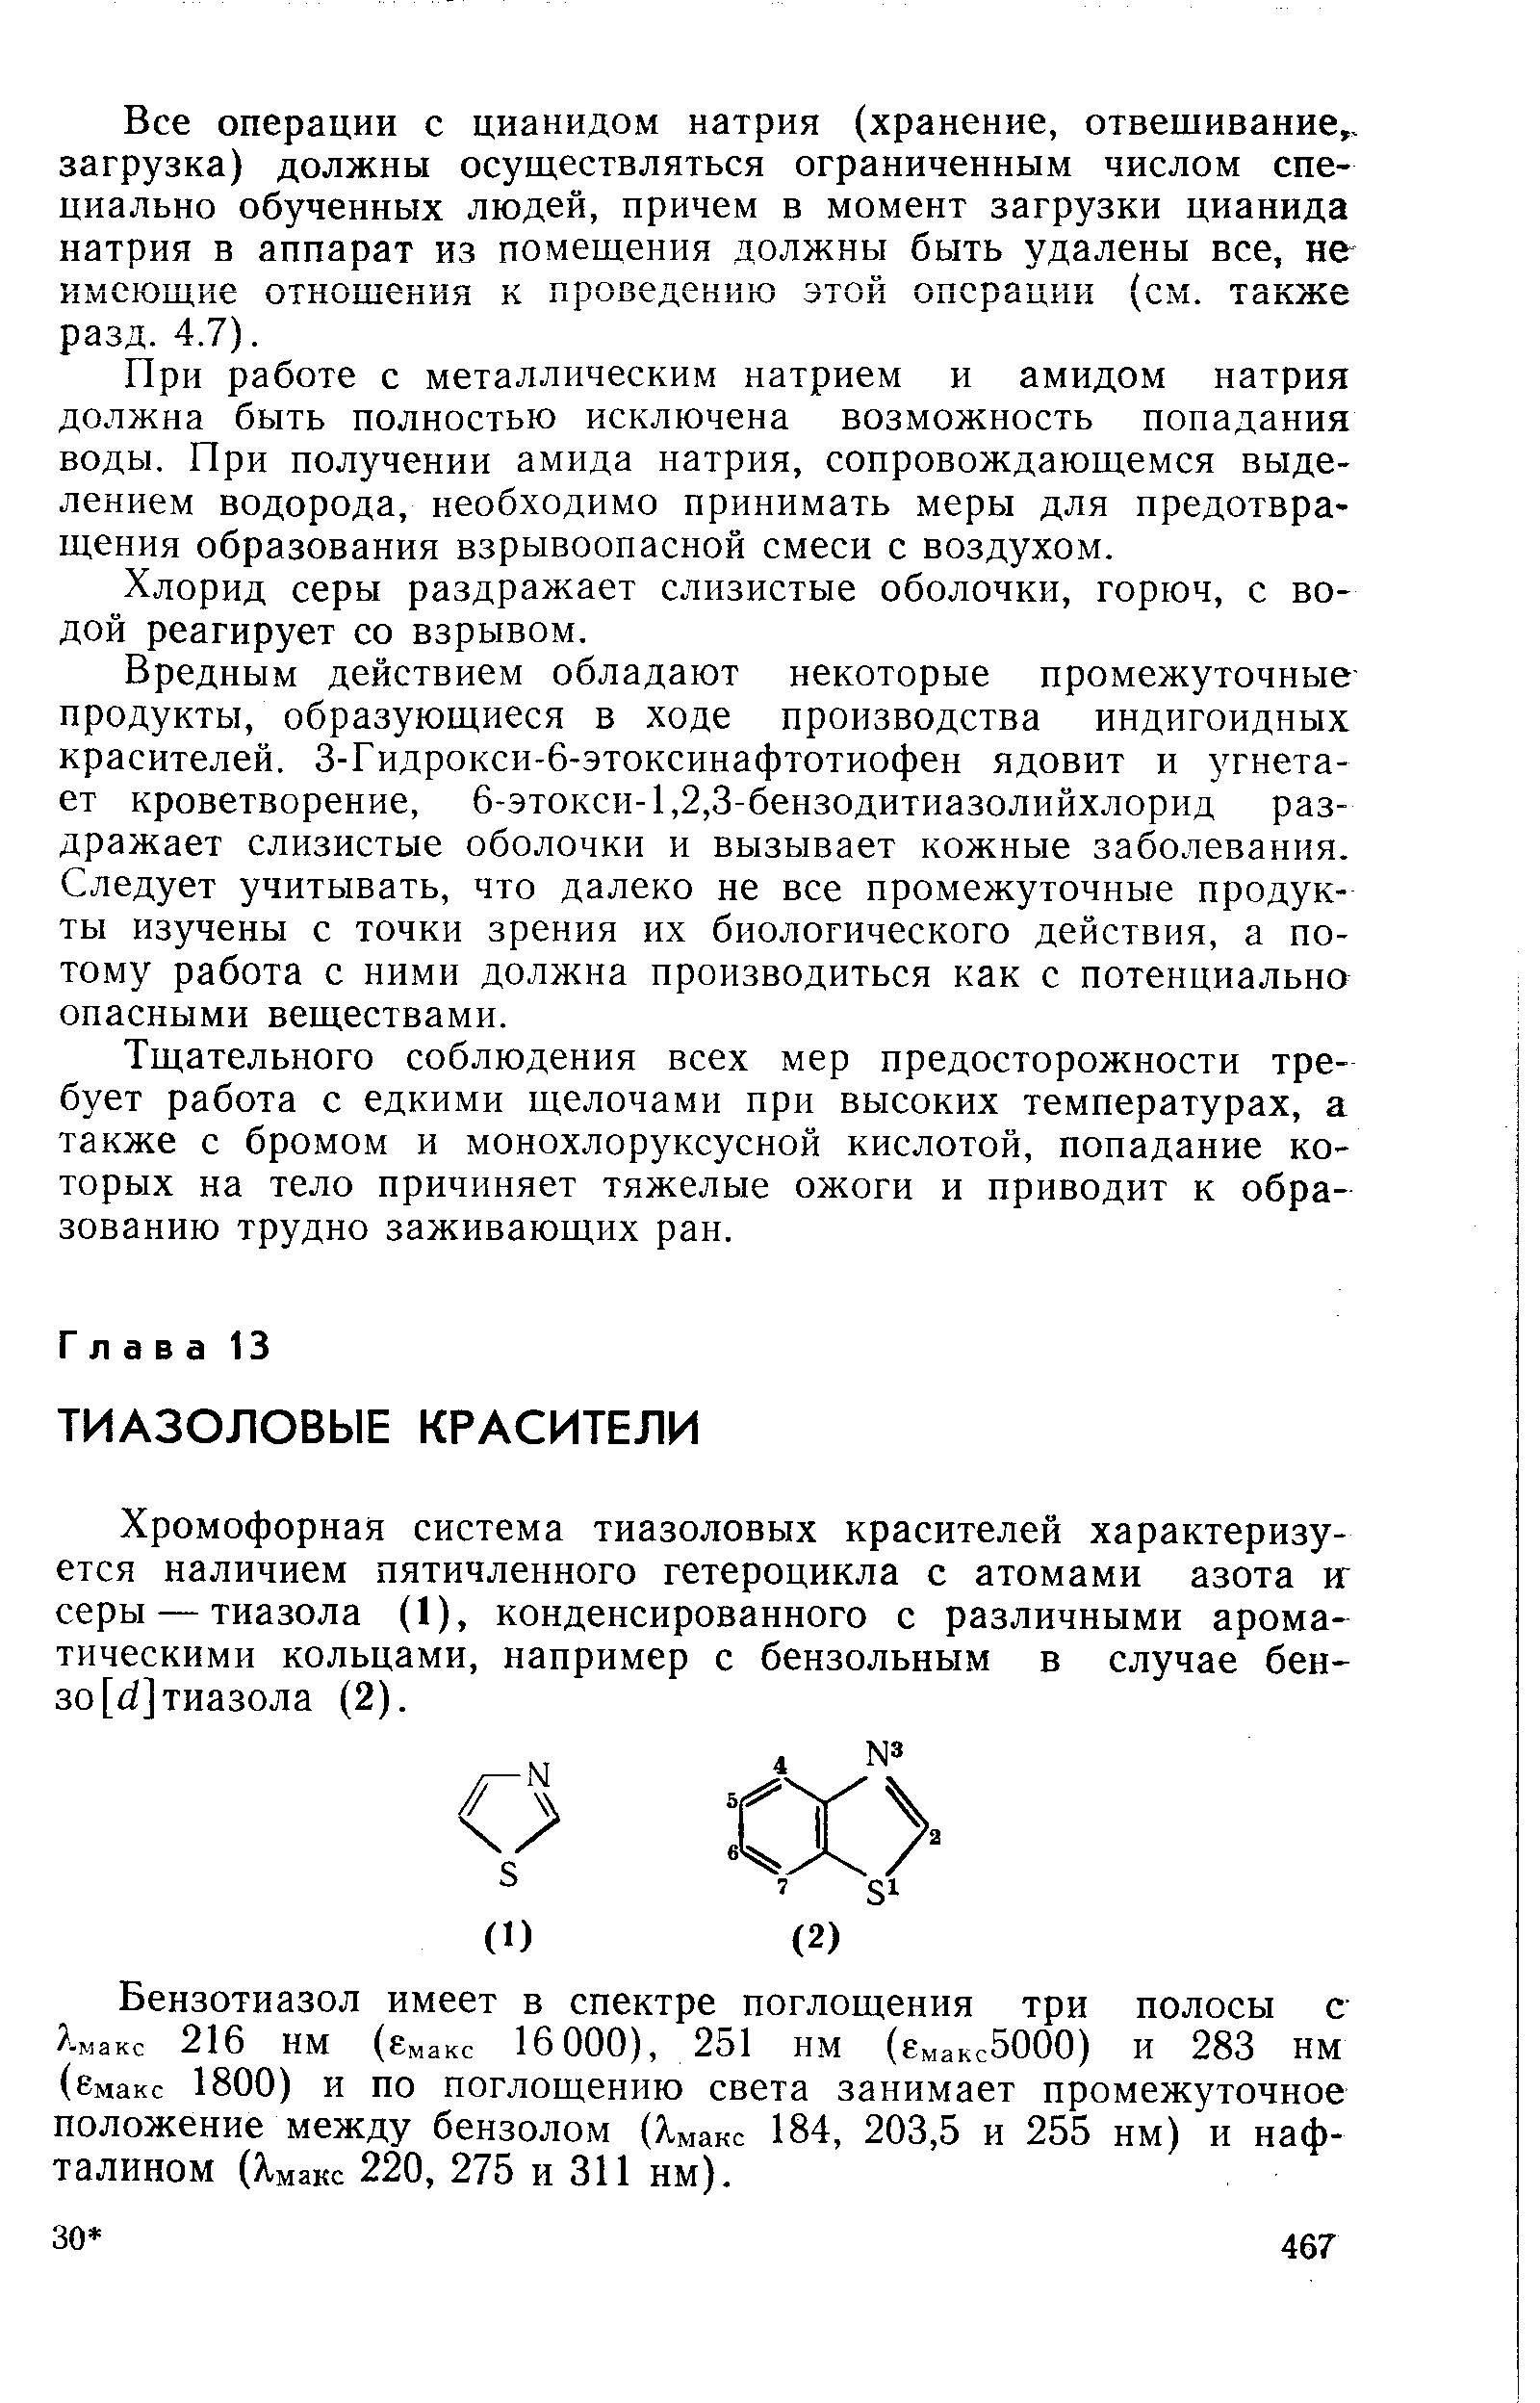 Хромофорная система тиазоловых красителей характеризуется наличием пятичленного гетероцикла с атомами азота иг серы — тиазола (1), конденсированного с различными ароматическими кольцами, например с бензольным в случае бен-30[ ]тиазола (2).